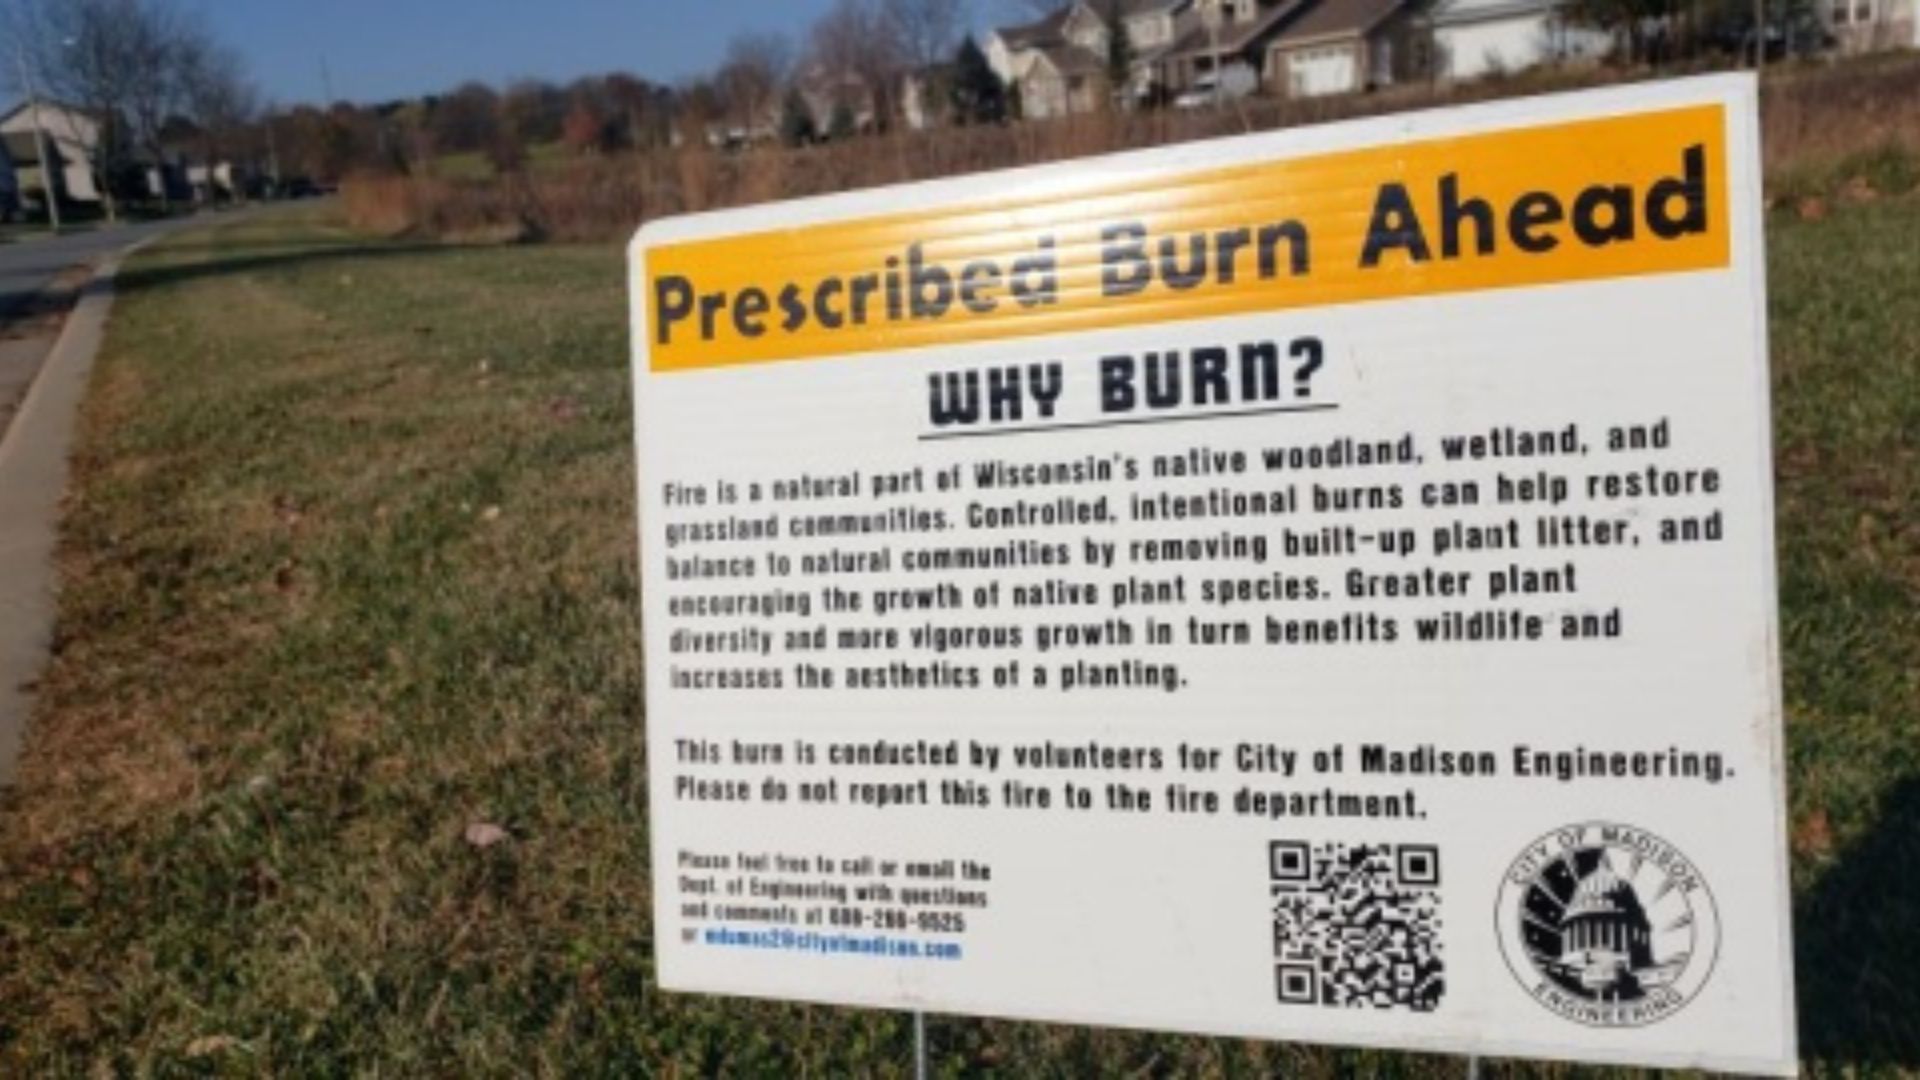 Prescribed burns to begin across Dane County next month